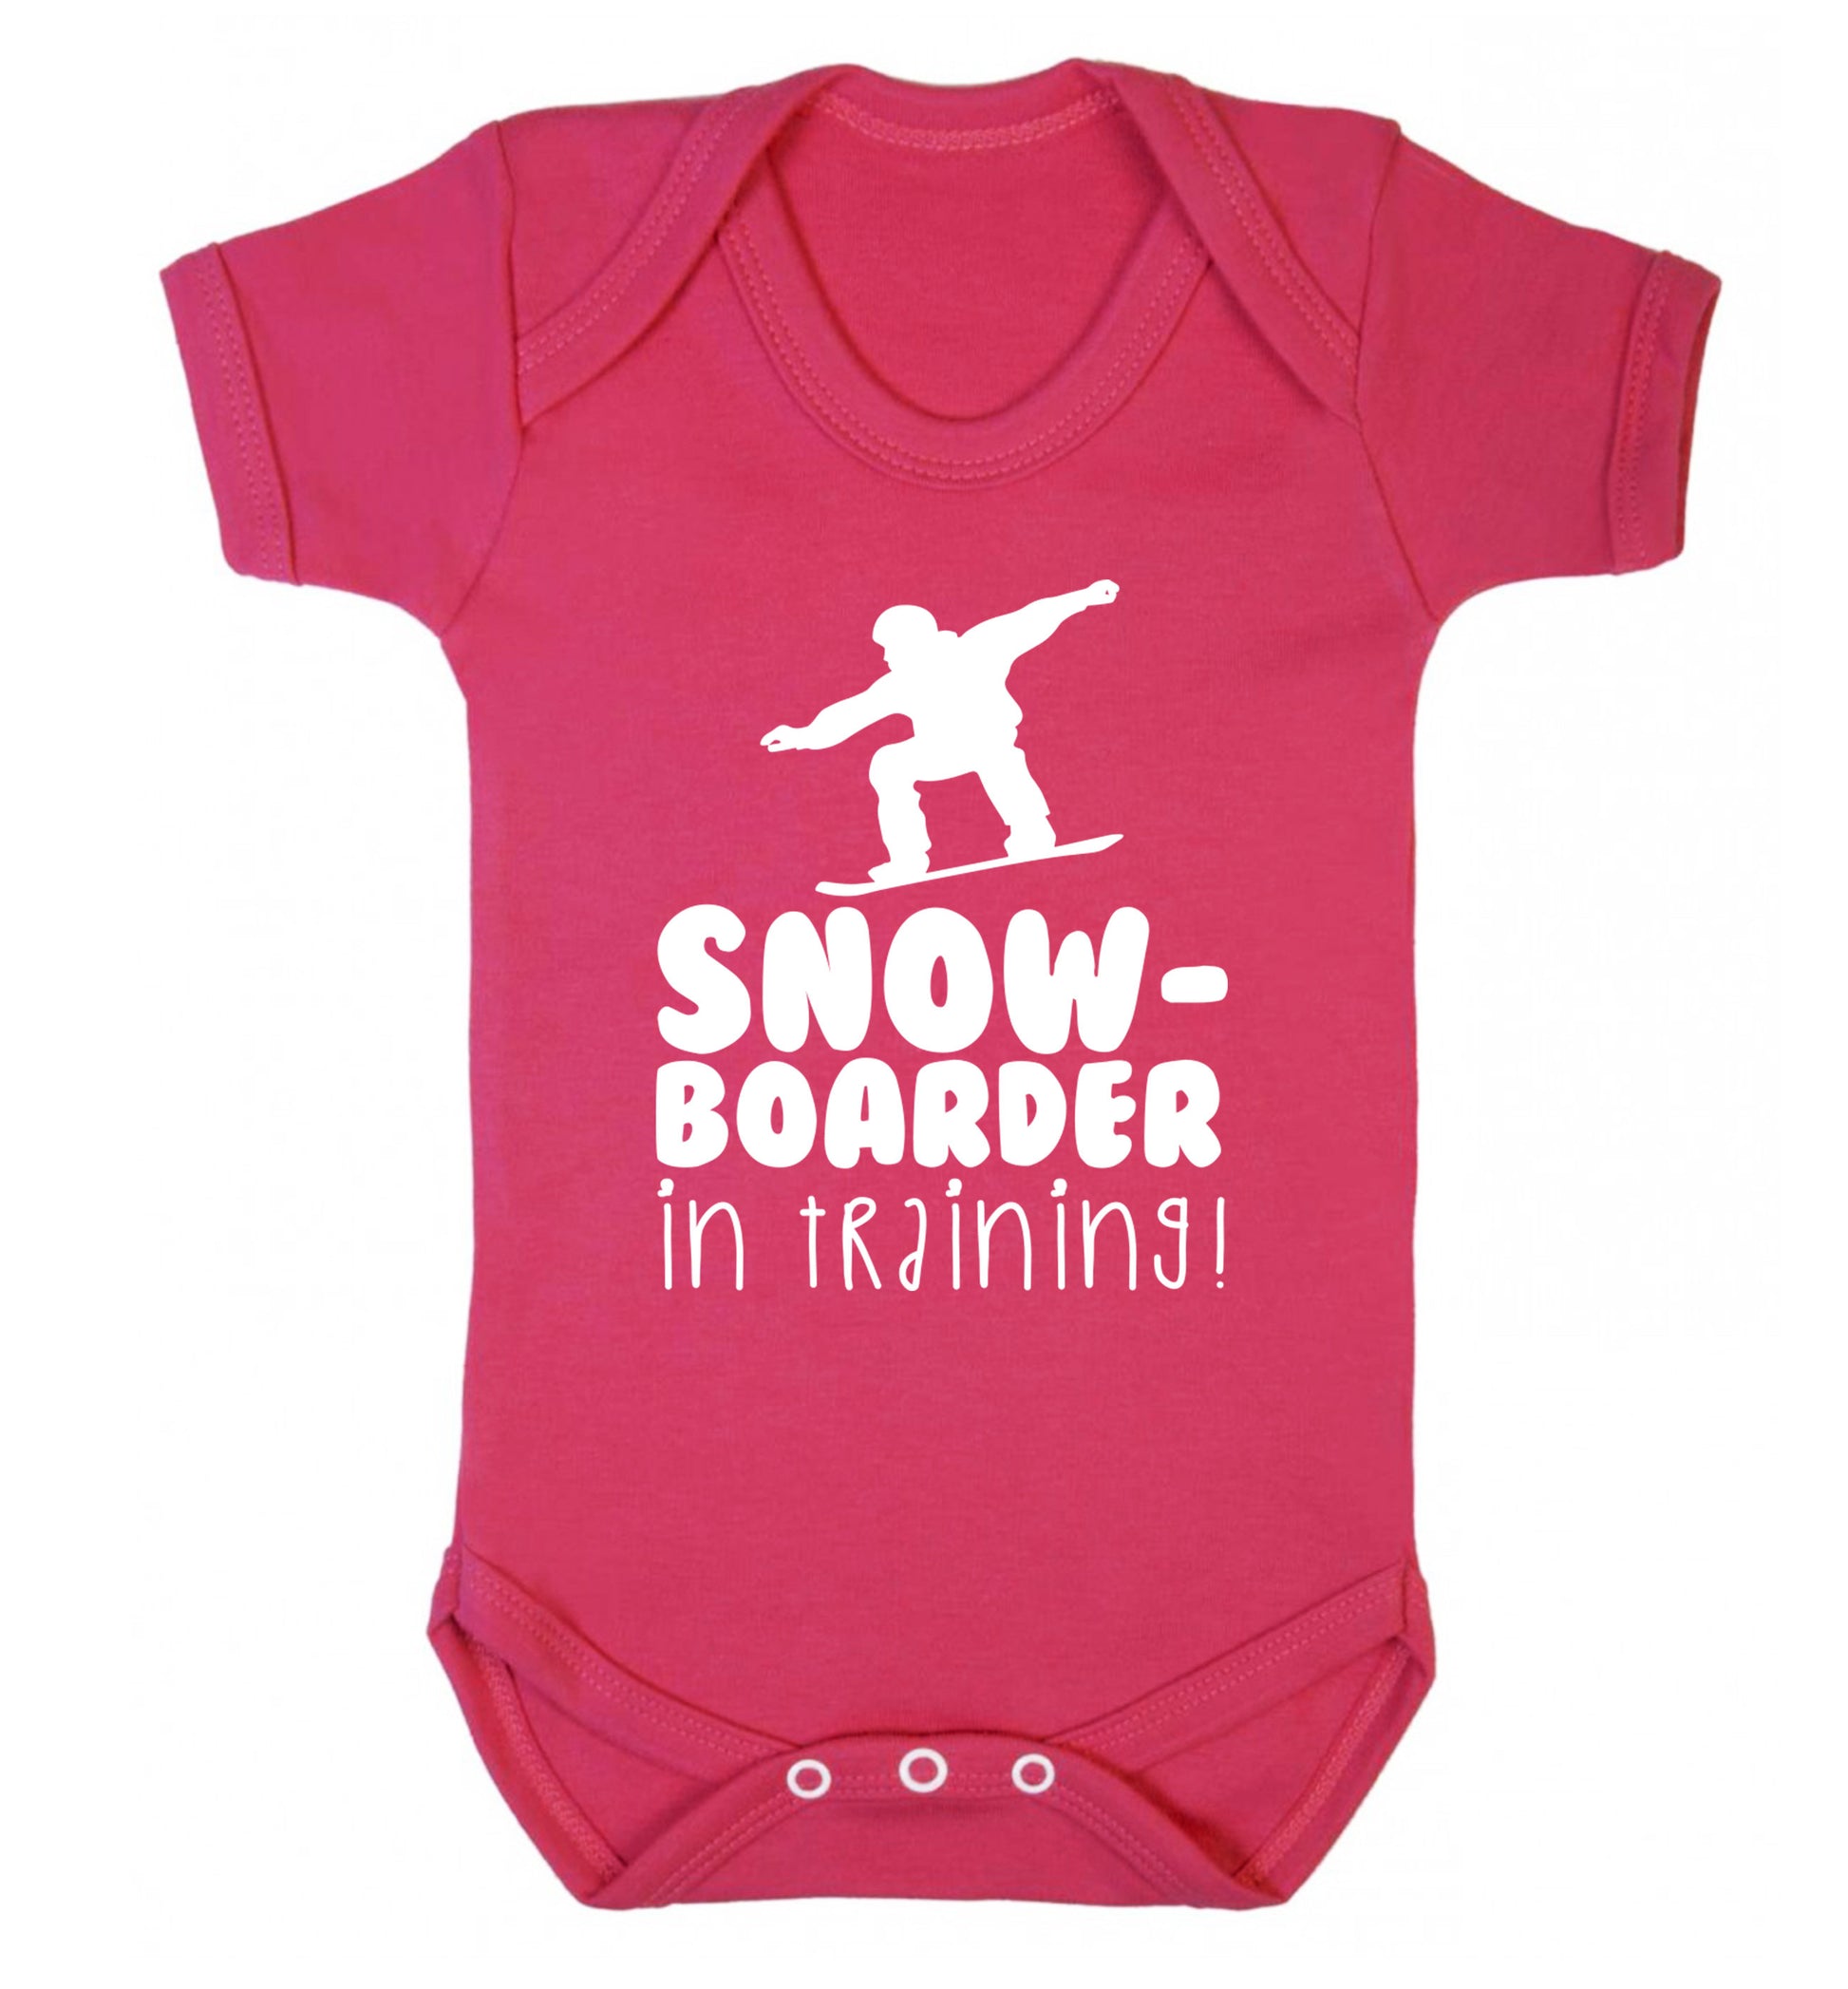 Snowboarder in training Baby Vest dark pink 18-24 months